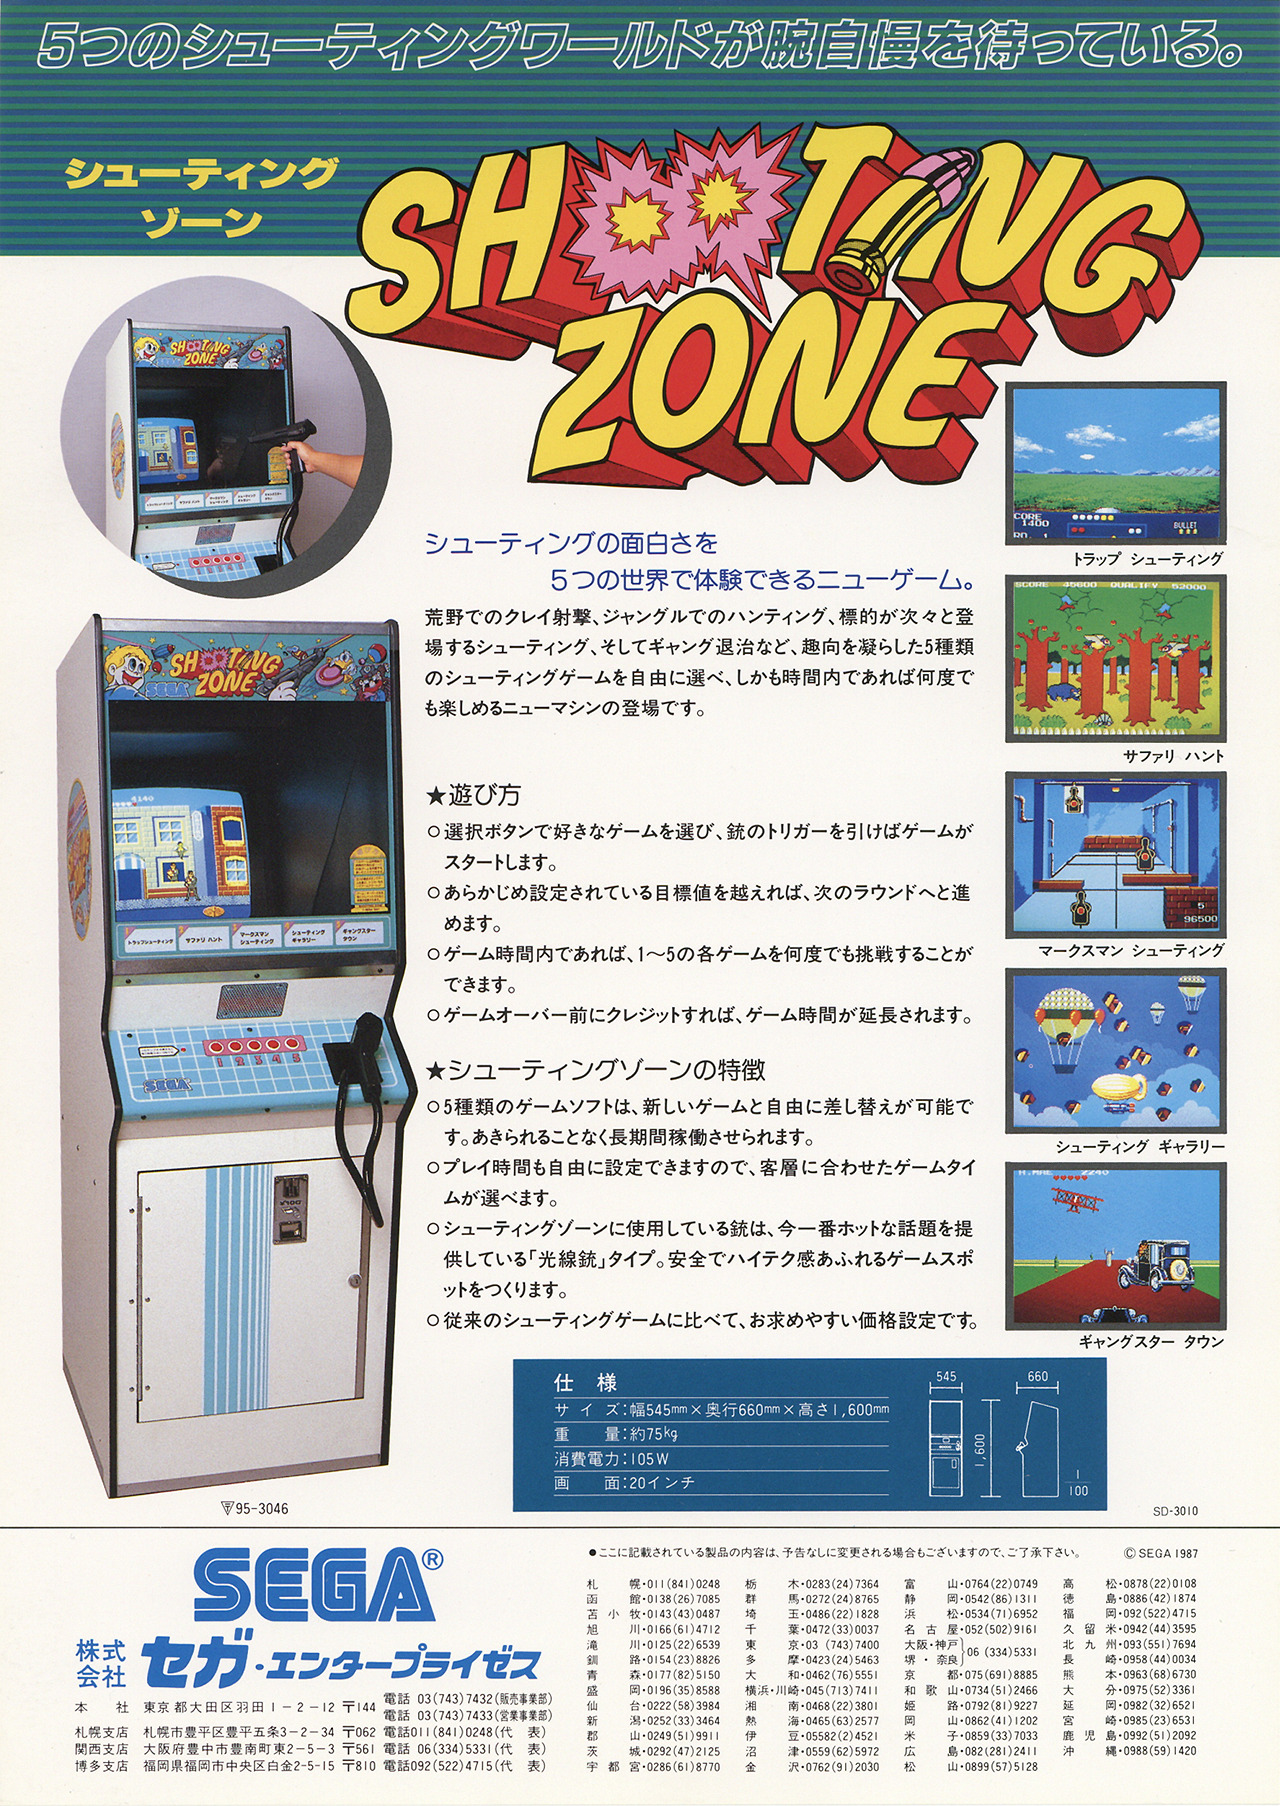 ShootingZone Arcade JP Flyer.jpg